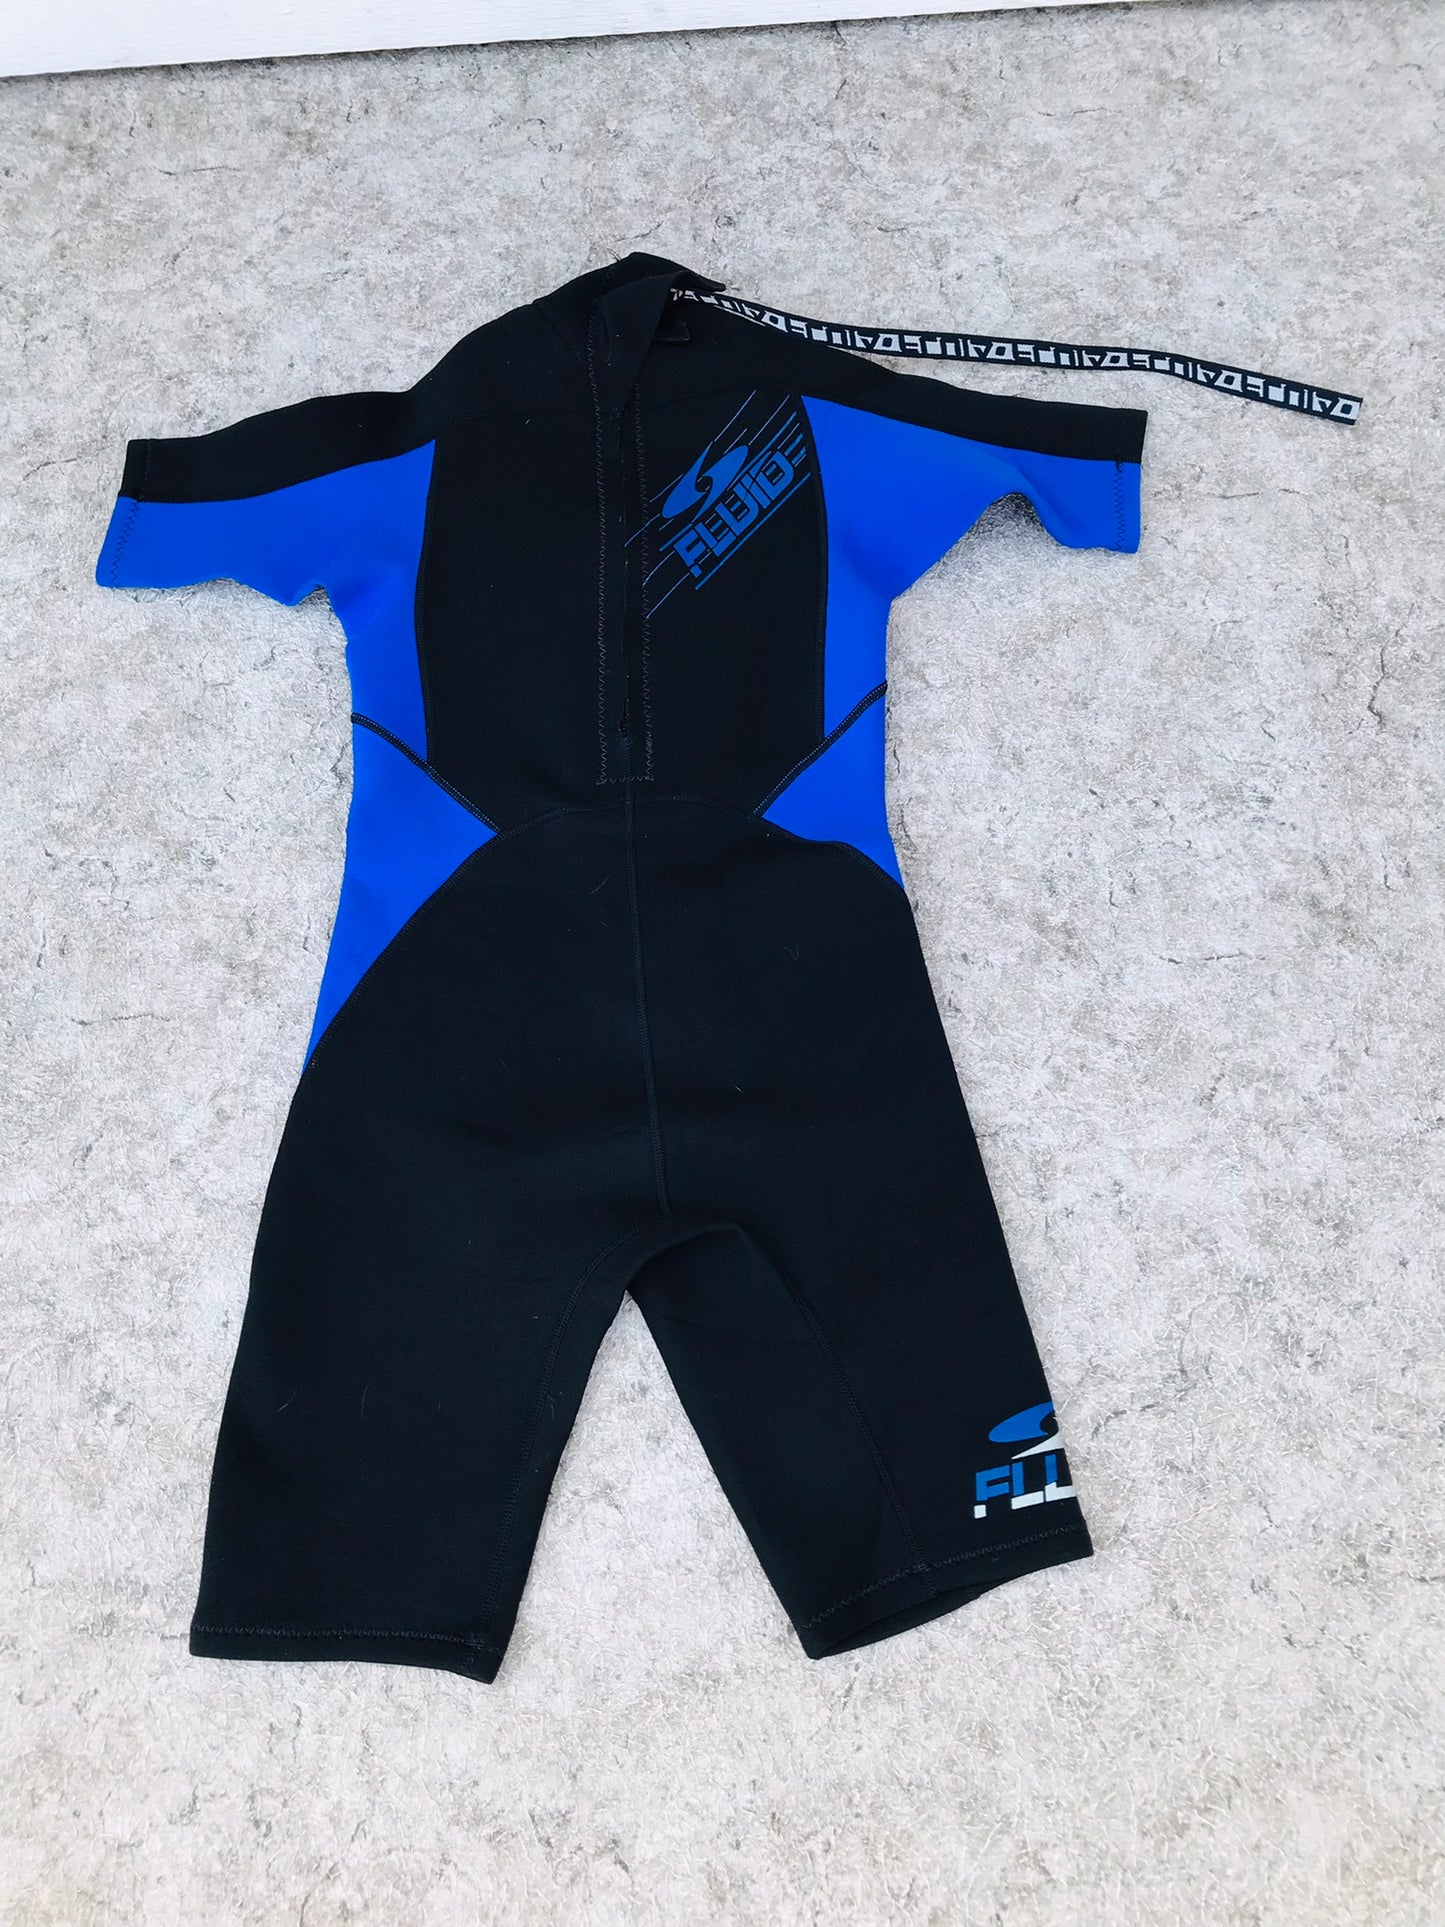 Wetsuit Child Size 10 Fluid Black Blue  2-3 mm  Excellent